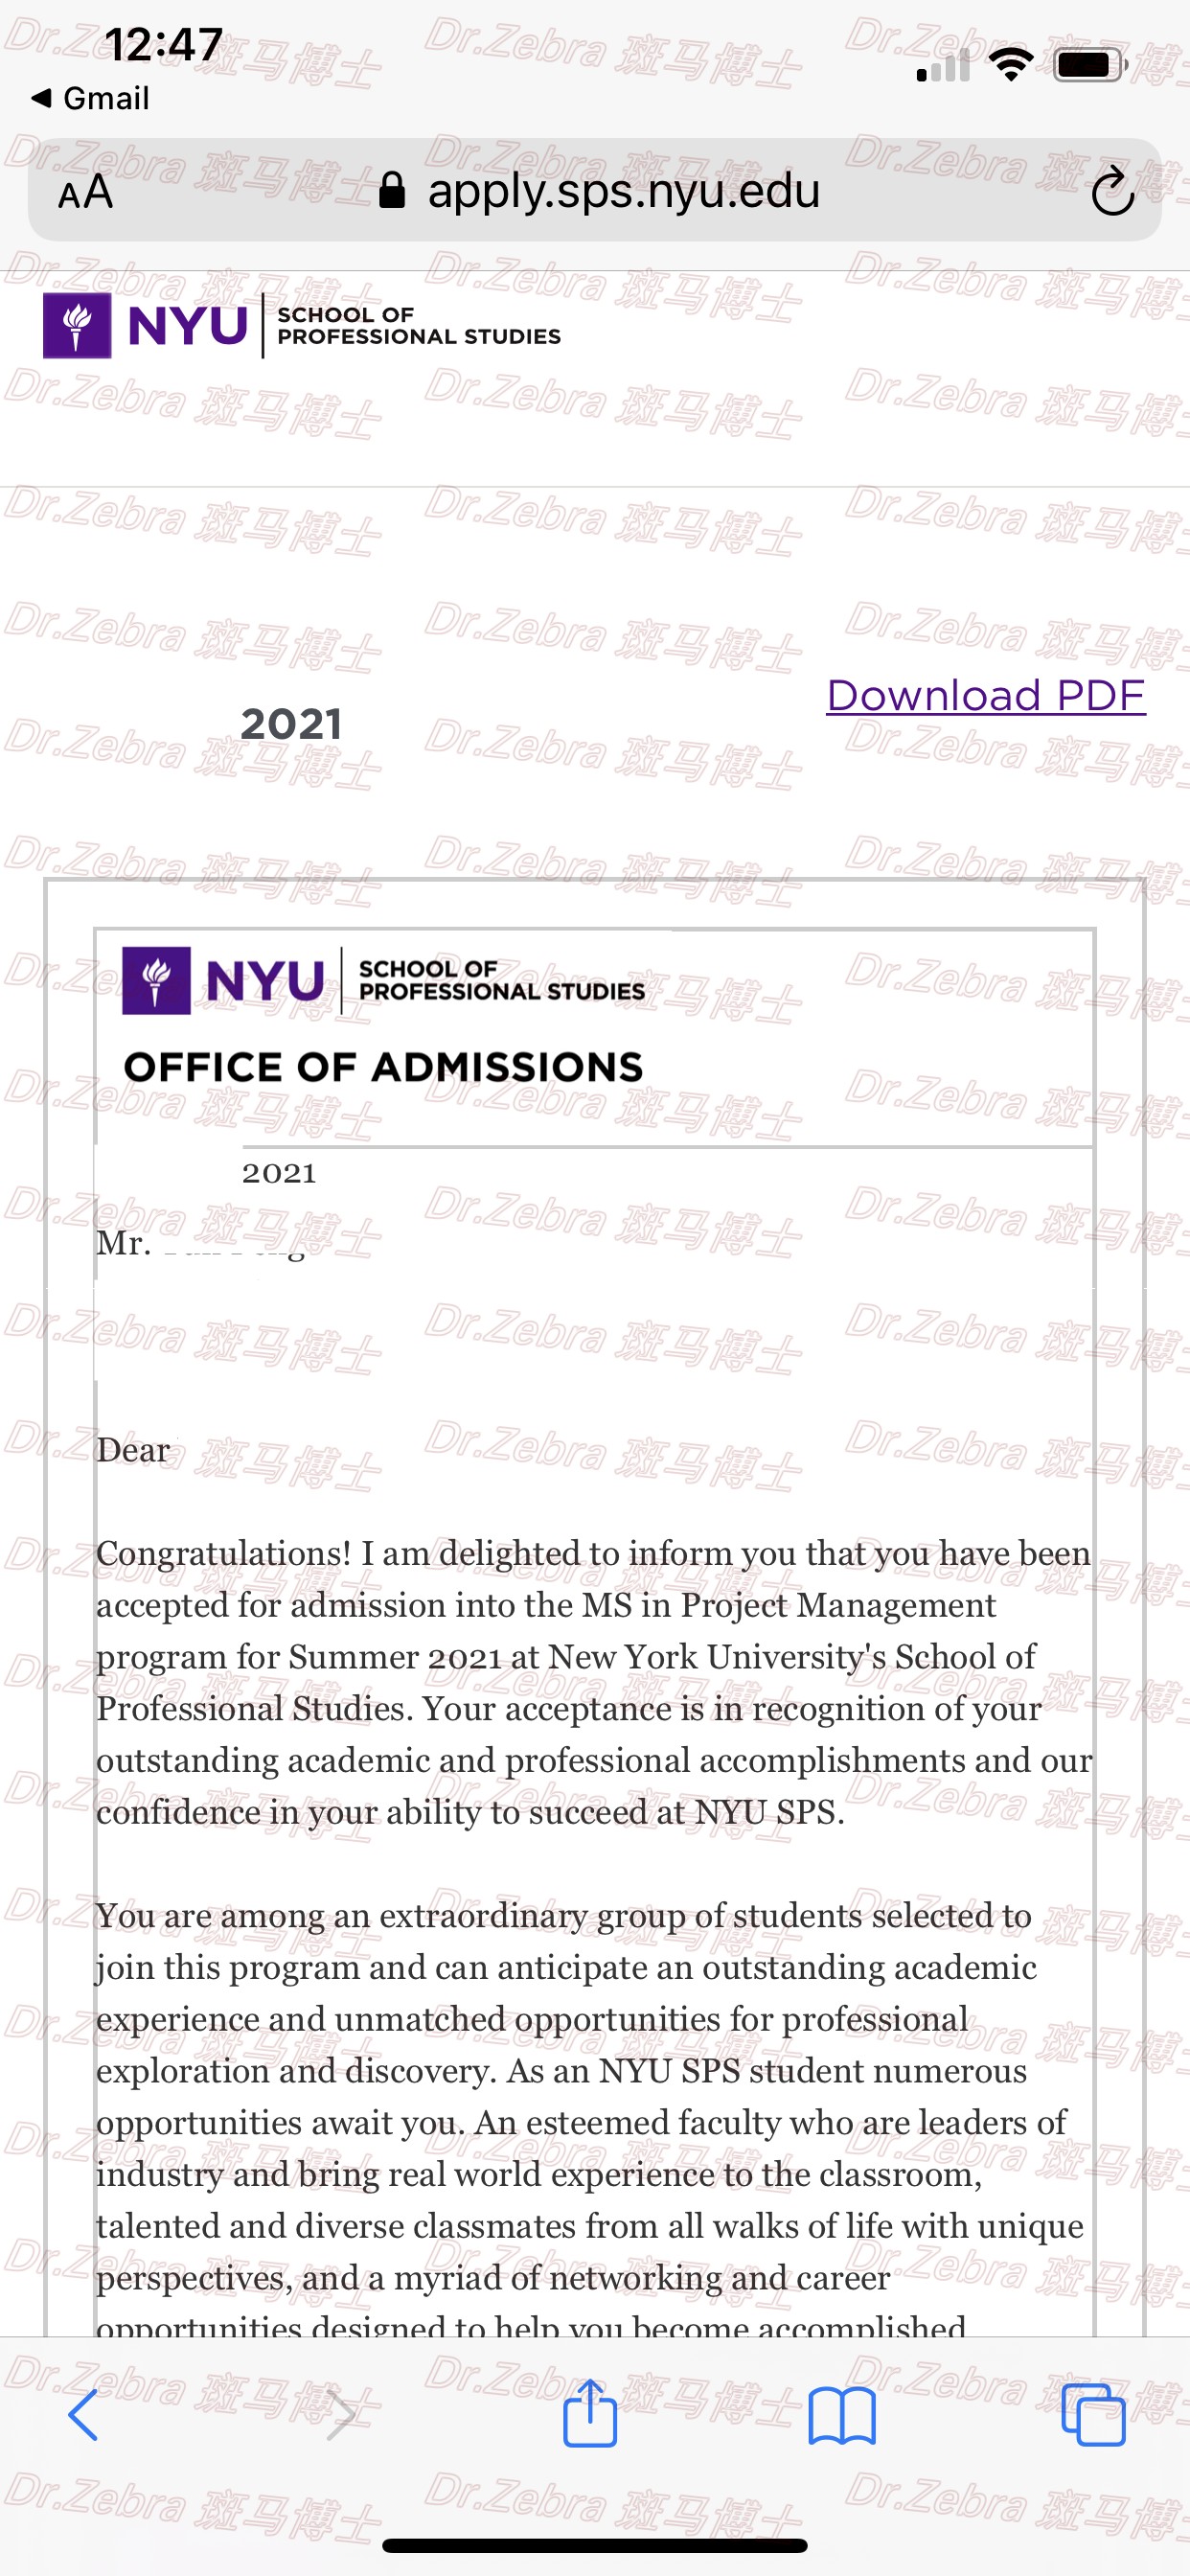 斑马博士留学中心、斑马博士、New York University、NYU、MS project management 、纽约大学、项目管理硕士